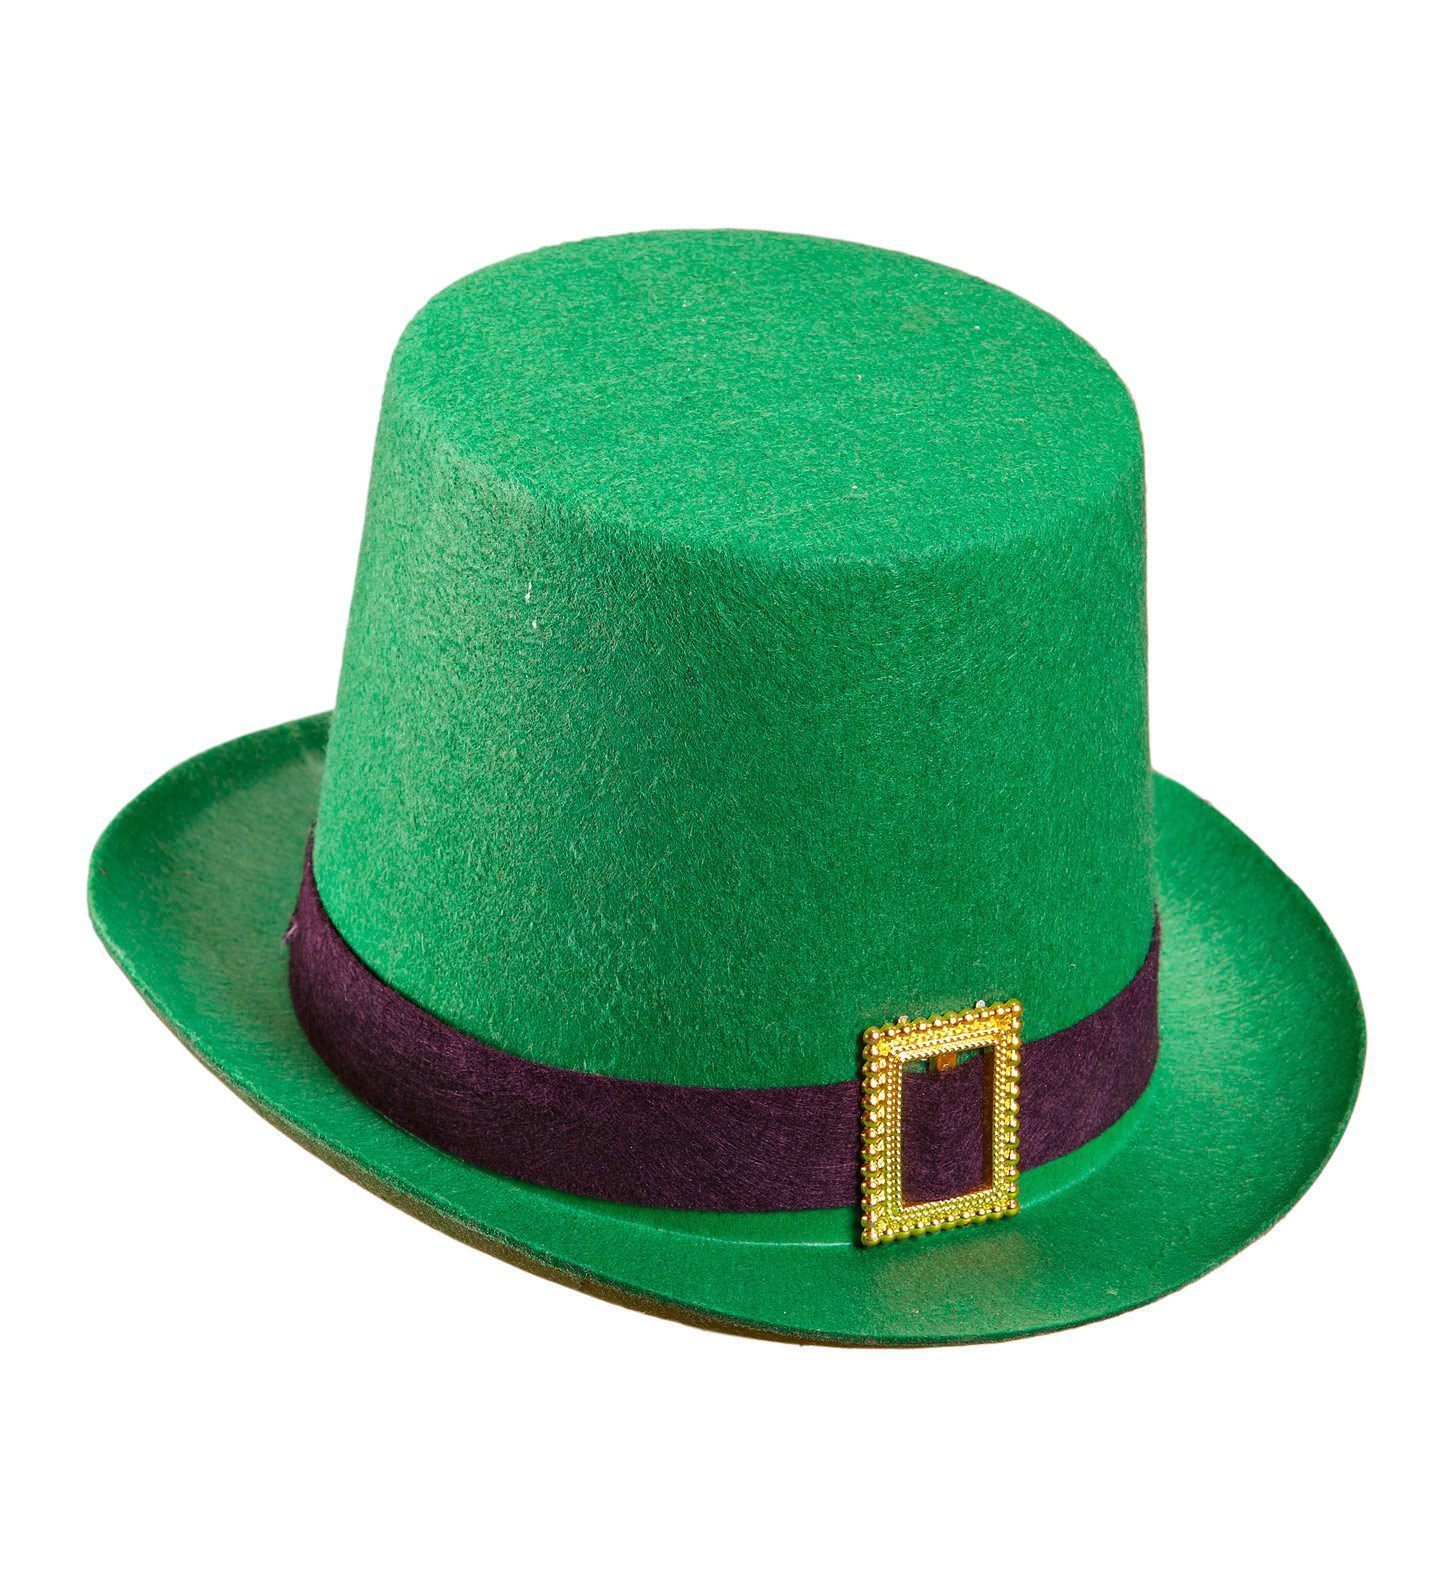 Шляпа патрика. Шляпа лепрекона. Шляпа Святого Патрика. Зеленая шляпа лепрекона. Ирландский шляпа лепрекона.